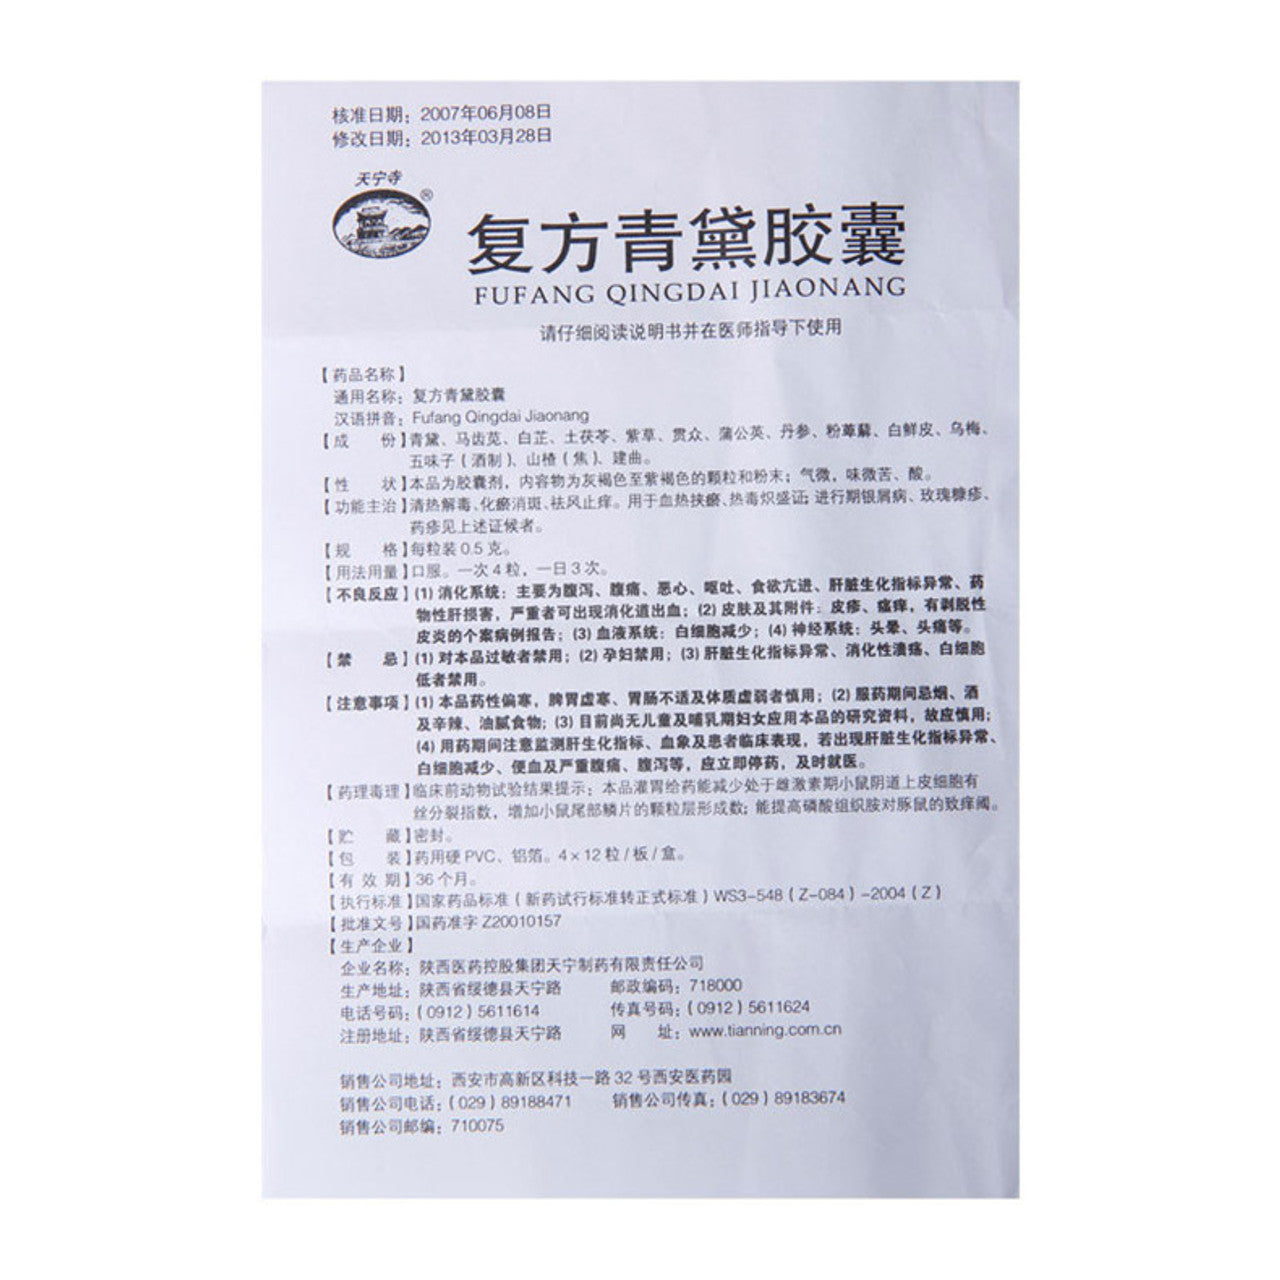 (0.5g*48 Capsules*5 boxes/lot). Fufang Qingdai Jiaonang or Fufang Qingdai Capsule for Psoriasis. Traditional Chinese Medicine. Fu Fang Qing Dai Jiao Nang.